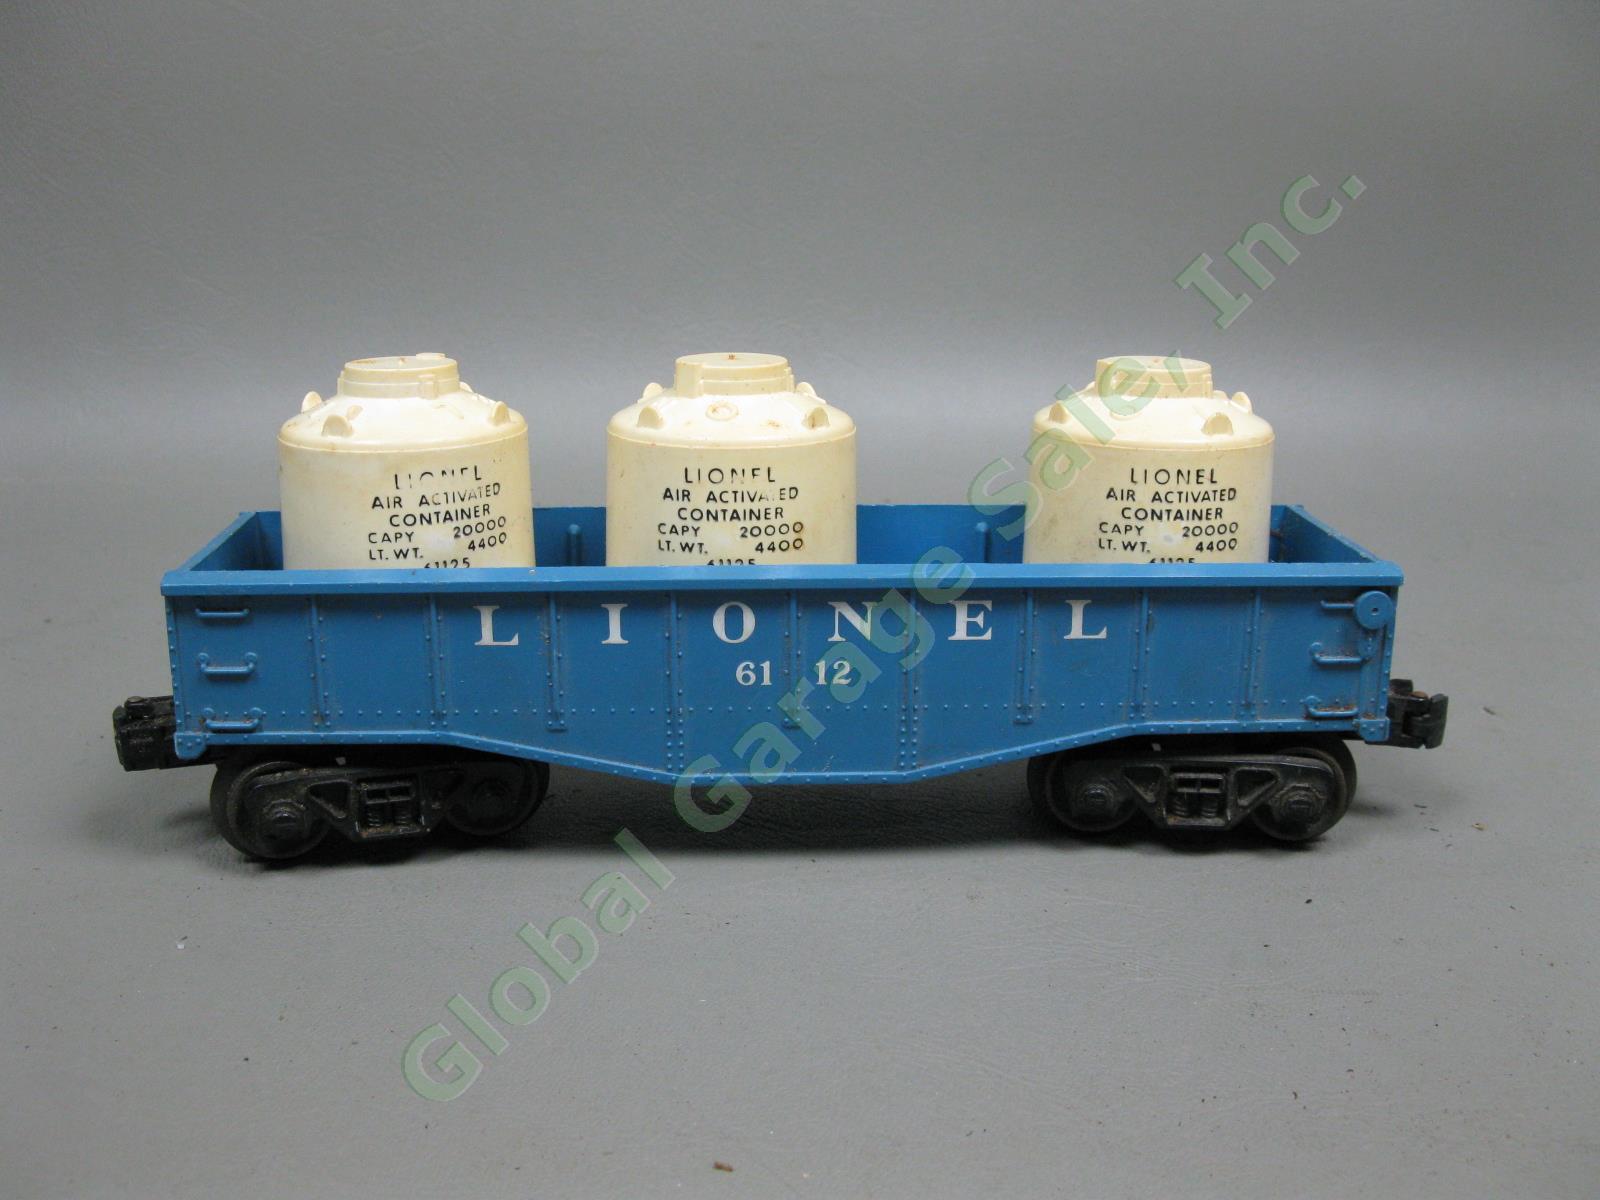 Vintage Lionel Lines/Marx O-Gauge Model Train Lot Tracks #6112 6424 6465 6801 NR 13